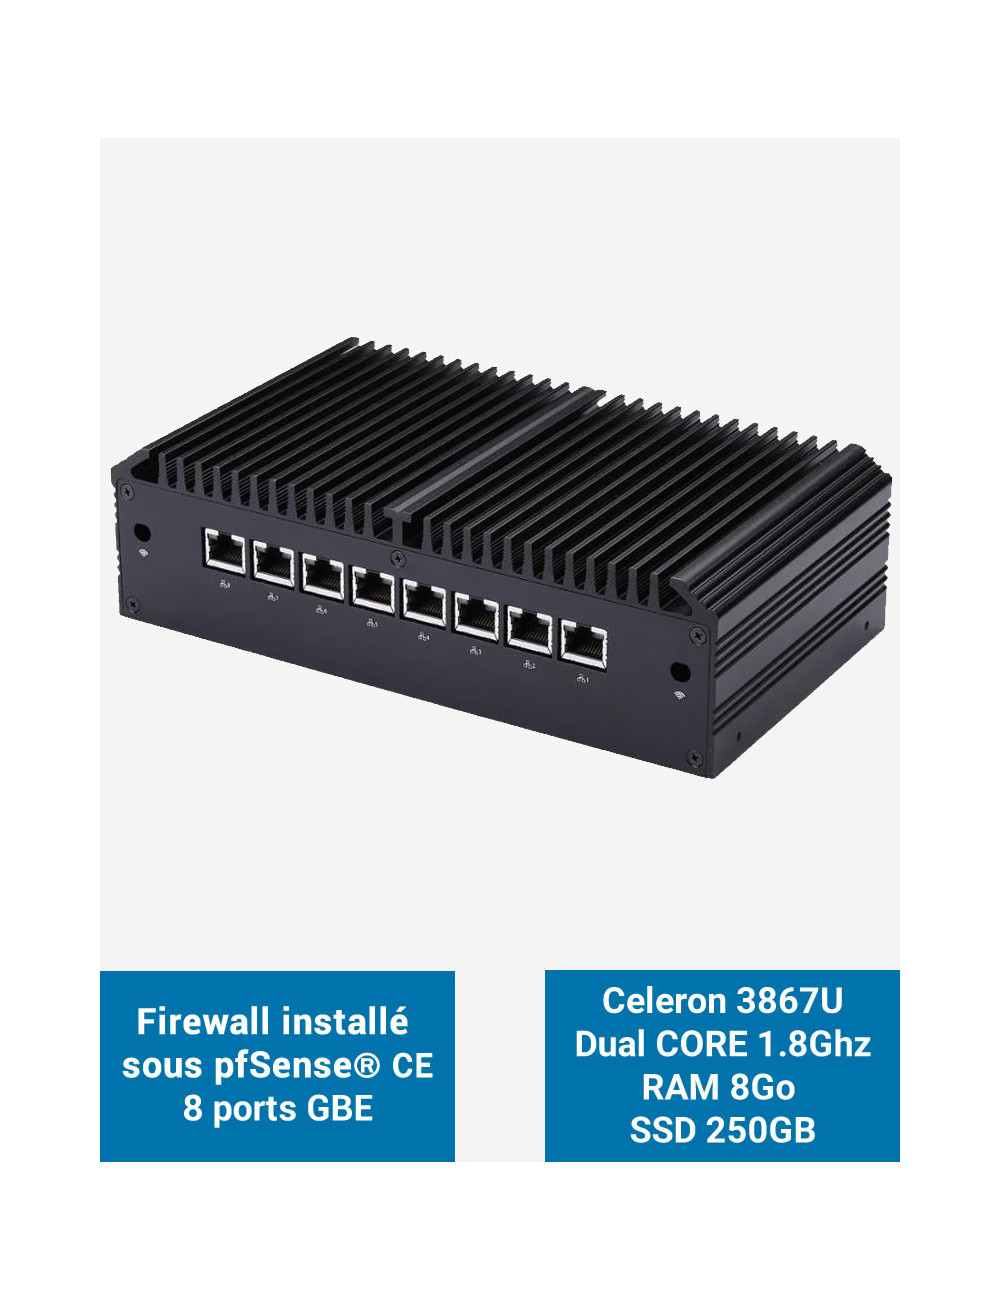 Firewall Q8x Celeron 3867U 8 ports GbE 8GB 250GB